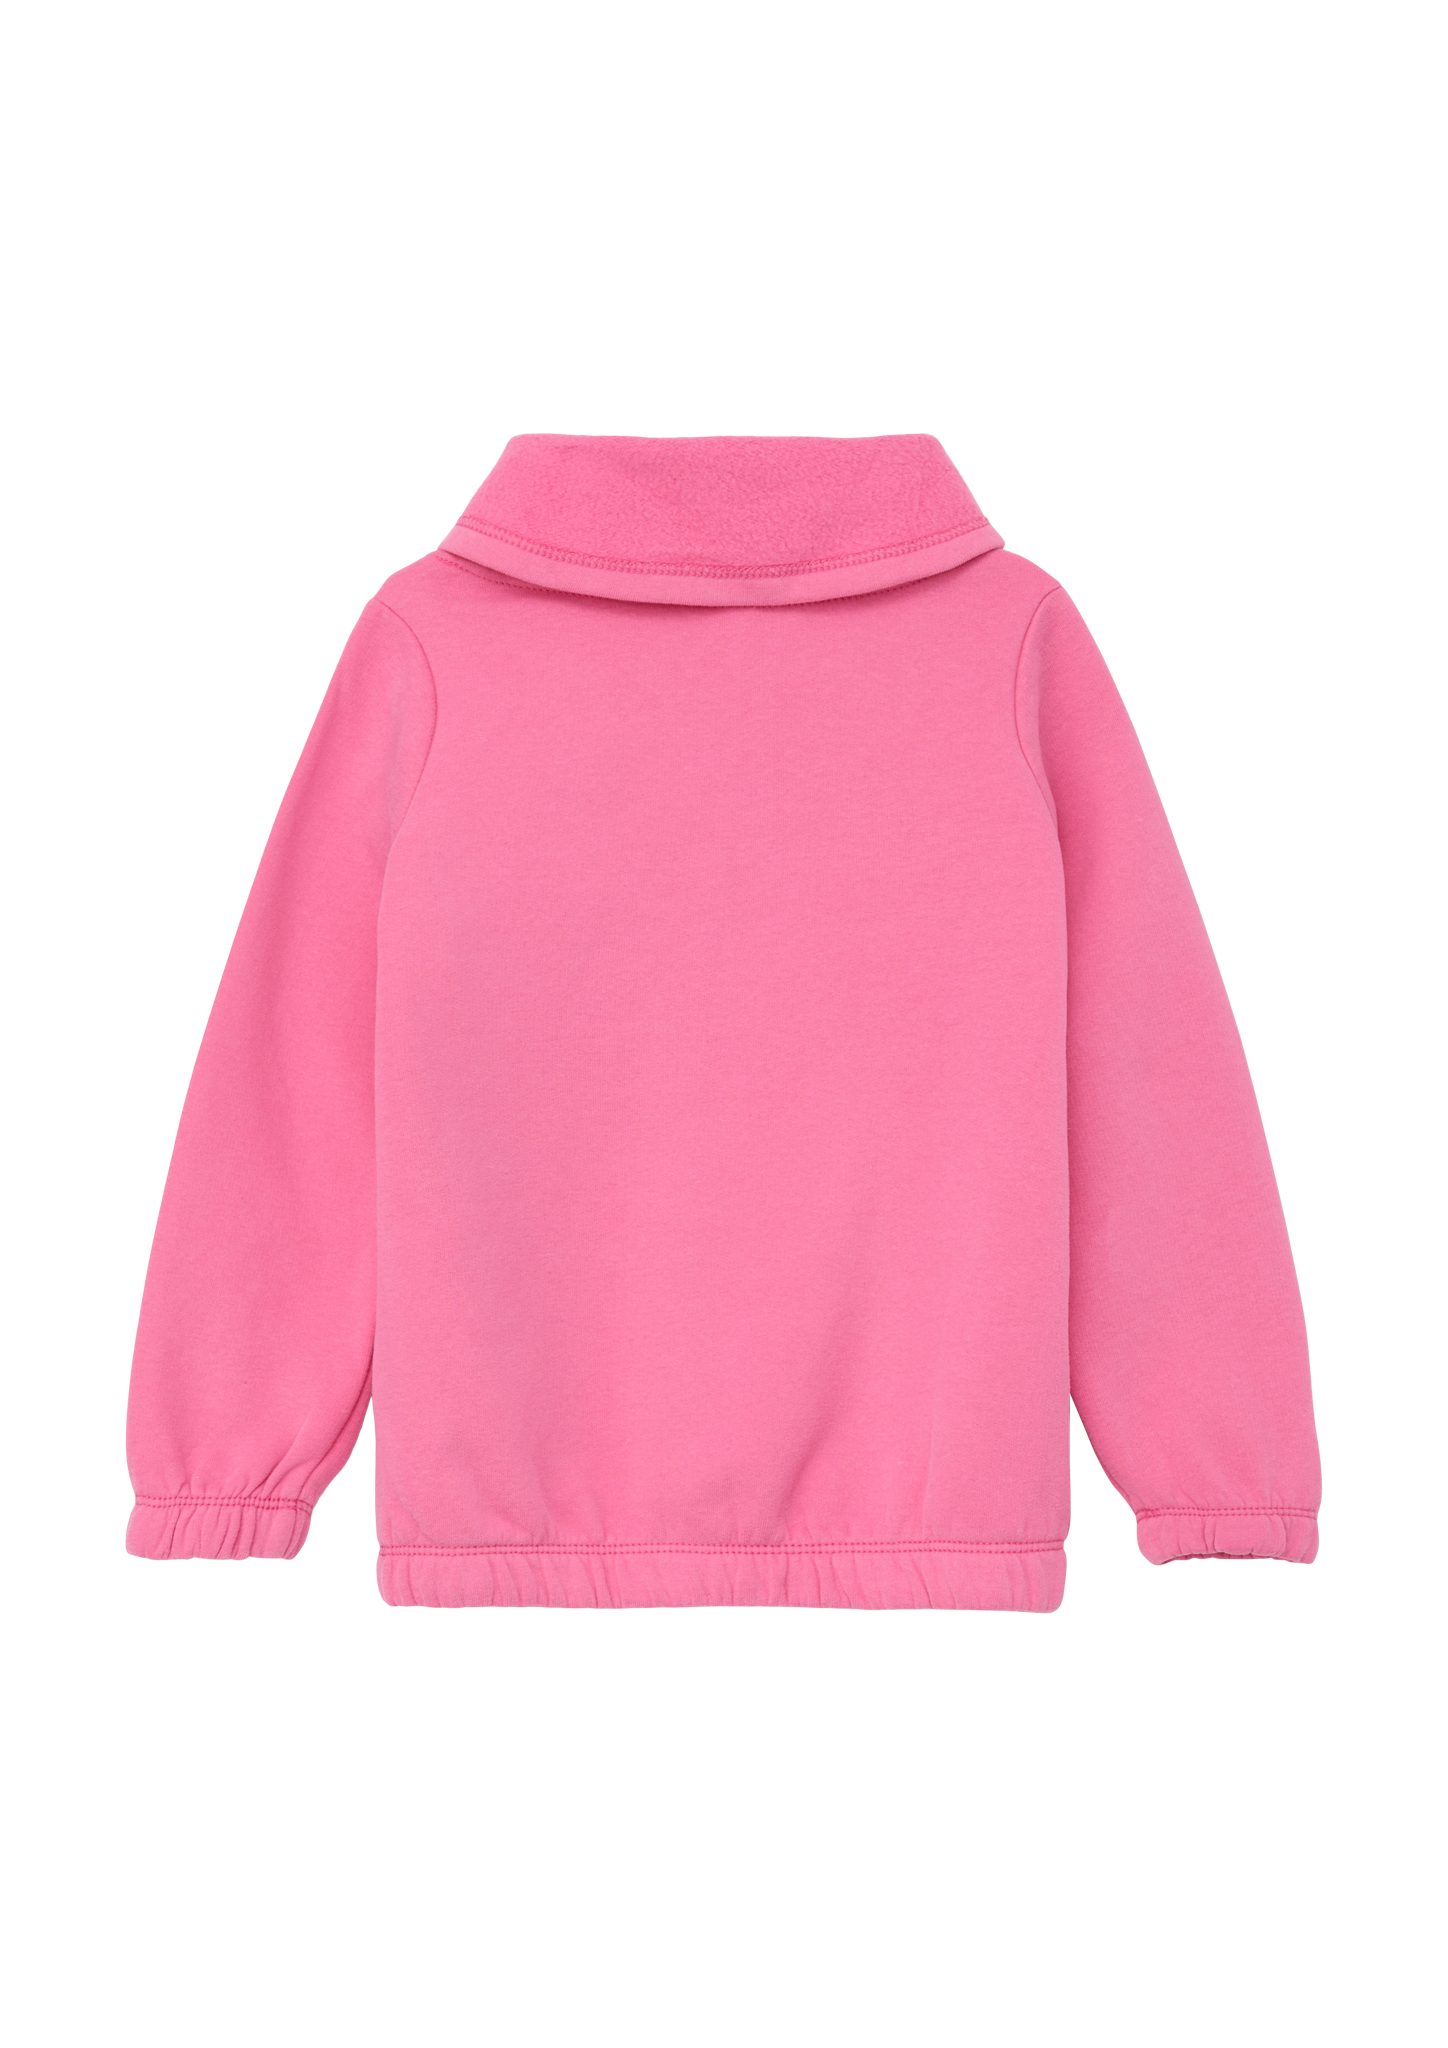 Schalkragen Sweatshirt pink Sweatshirt s.Oliver mit